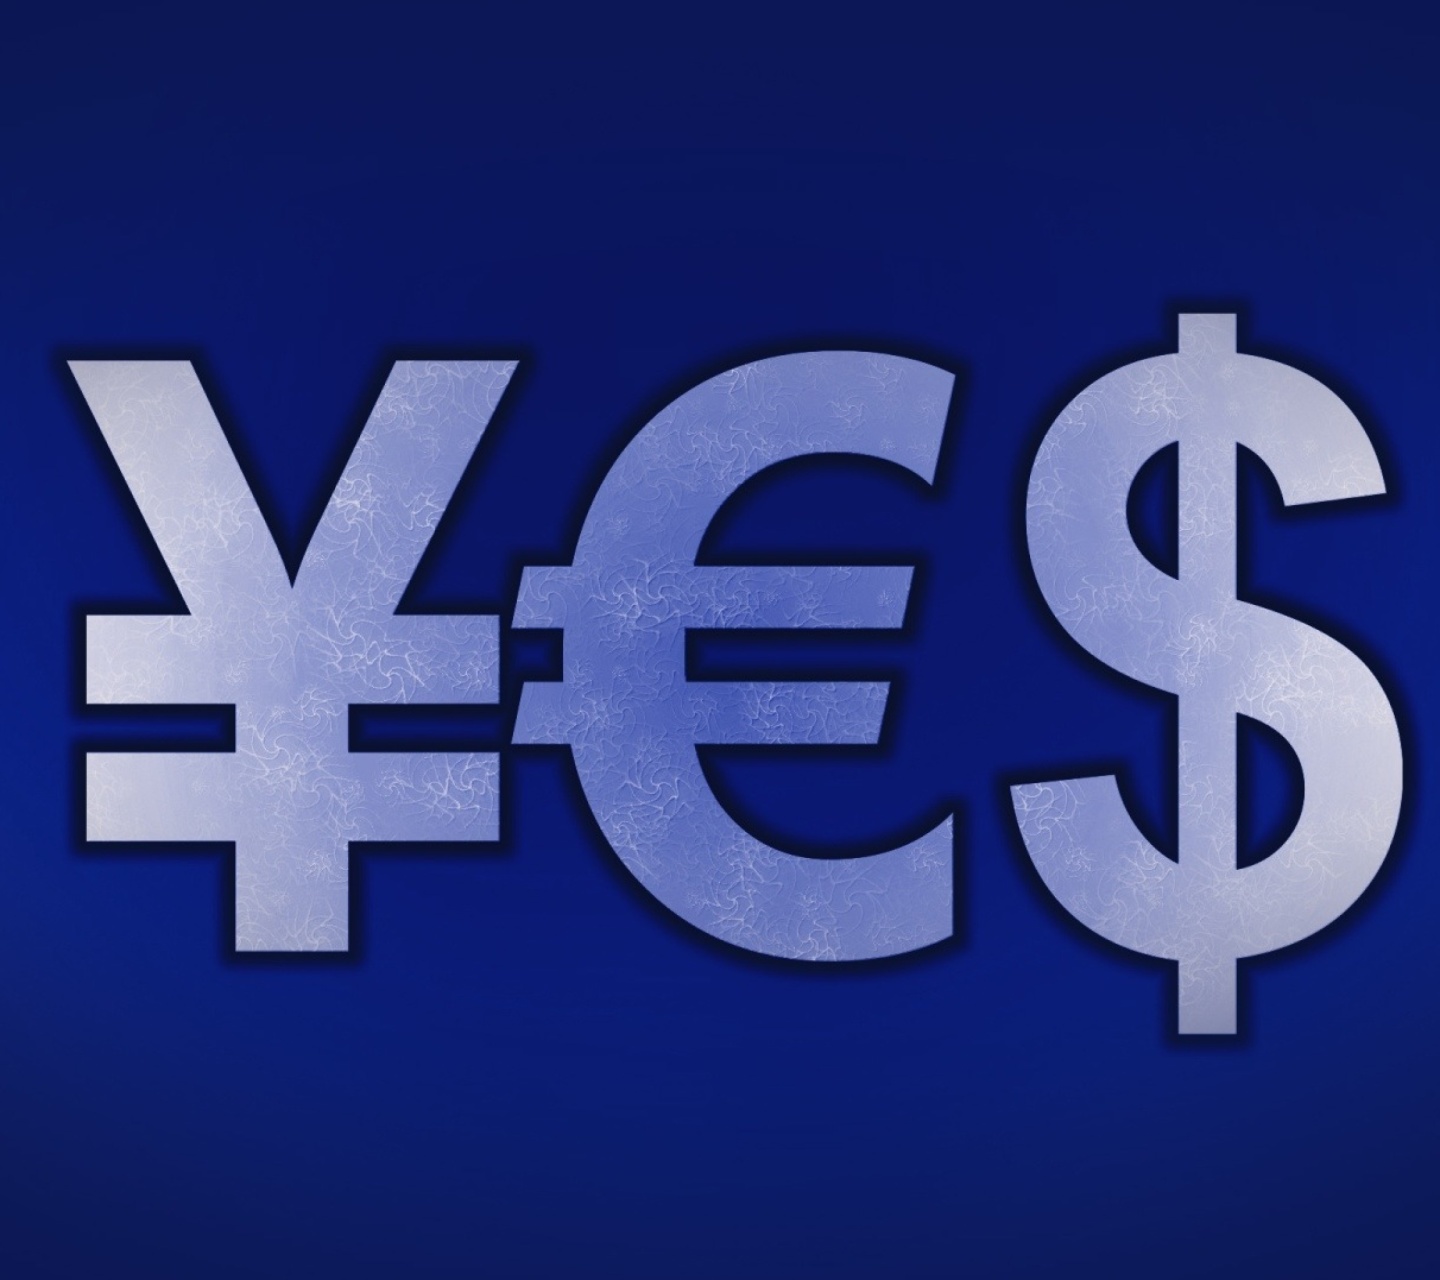 Japanese Yen, Euro, Dollar Symbol screenshot #1 1440x1280